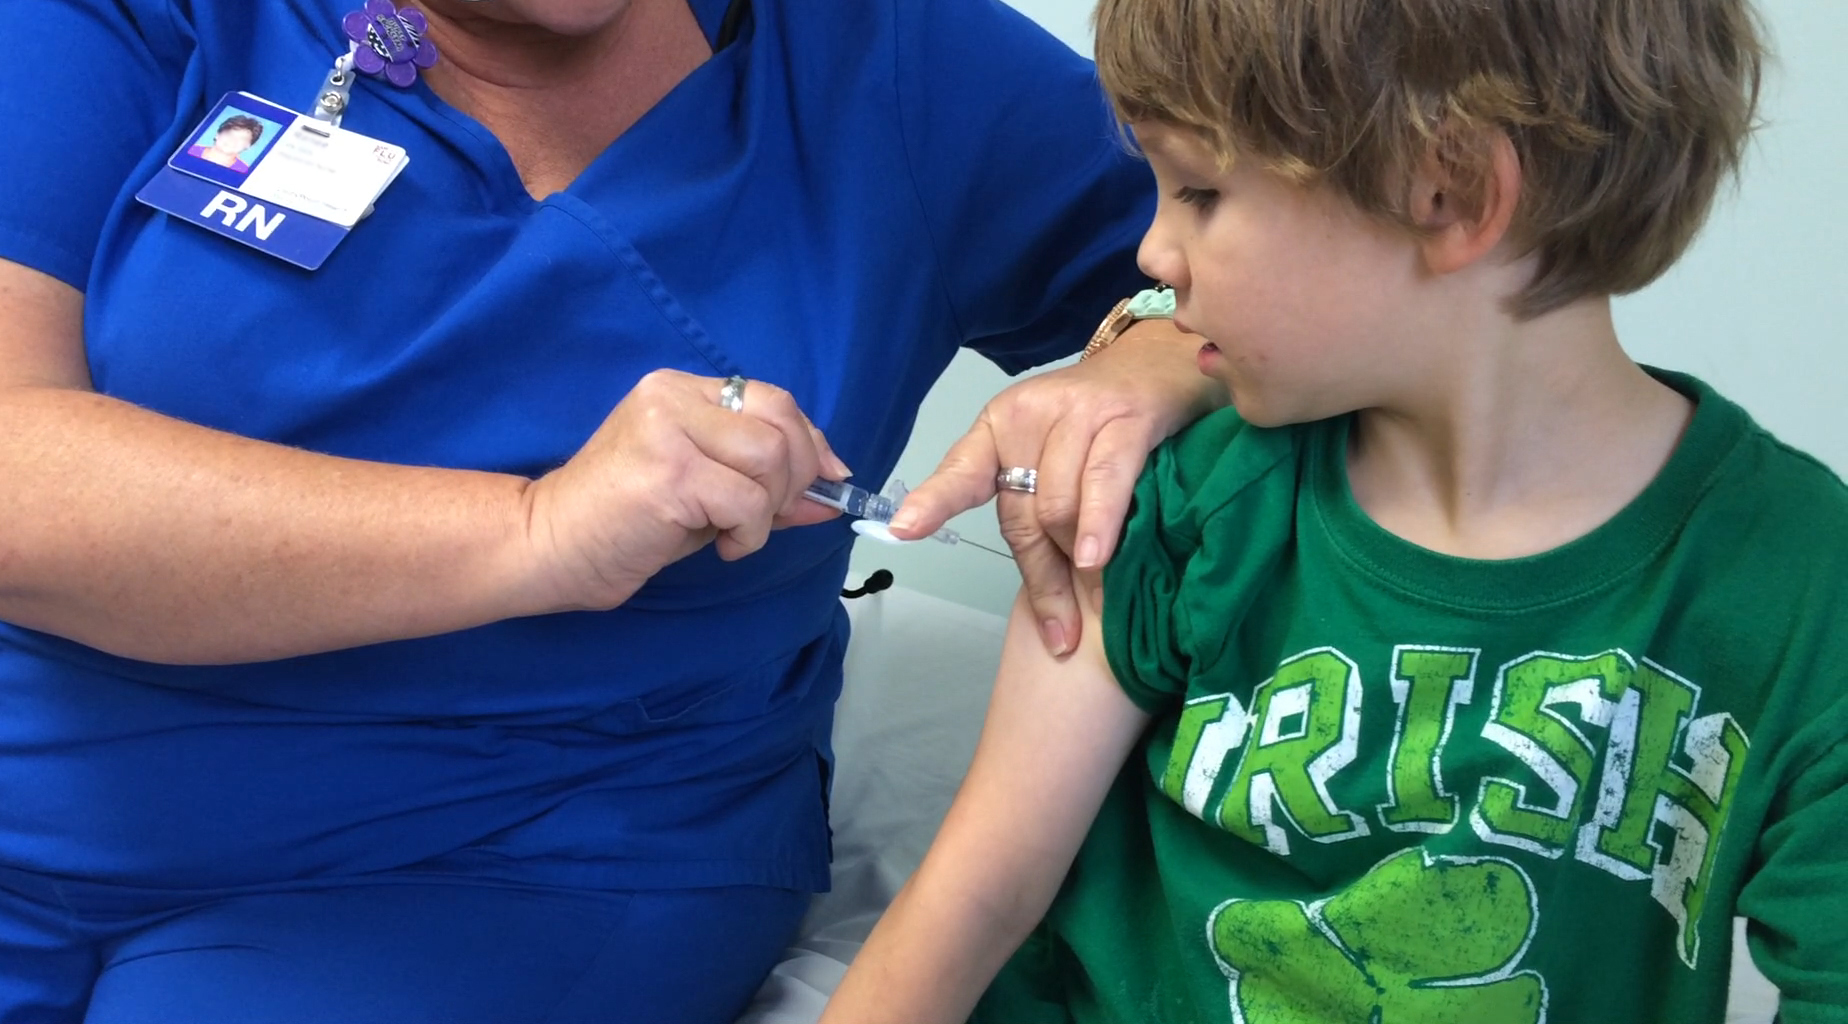 A young boy receiving a flu shot.